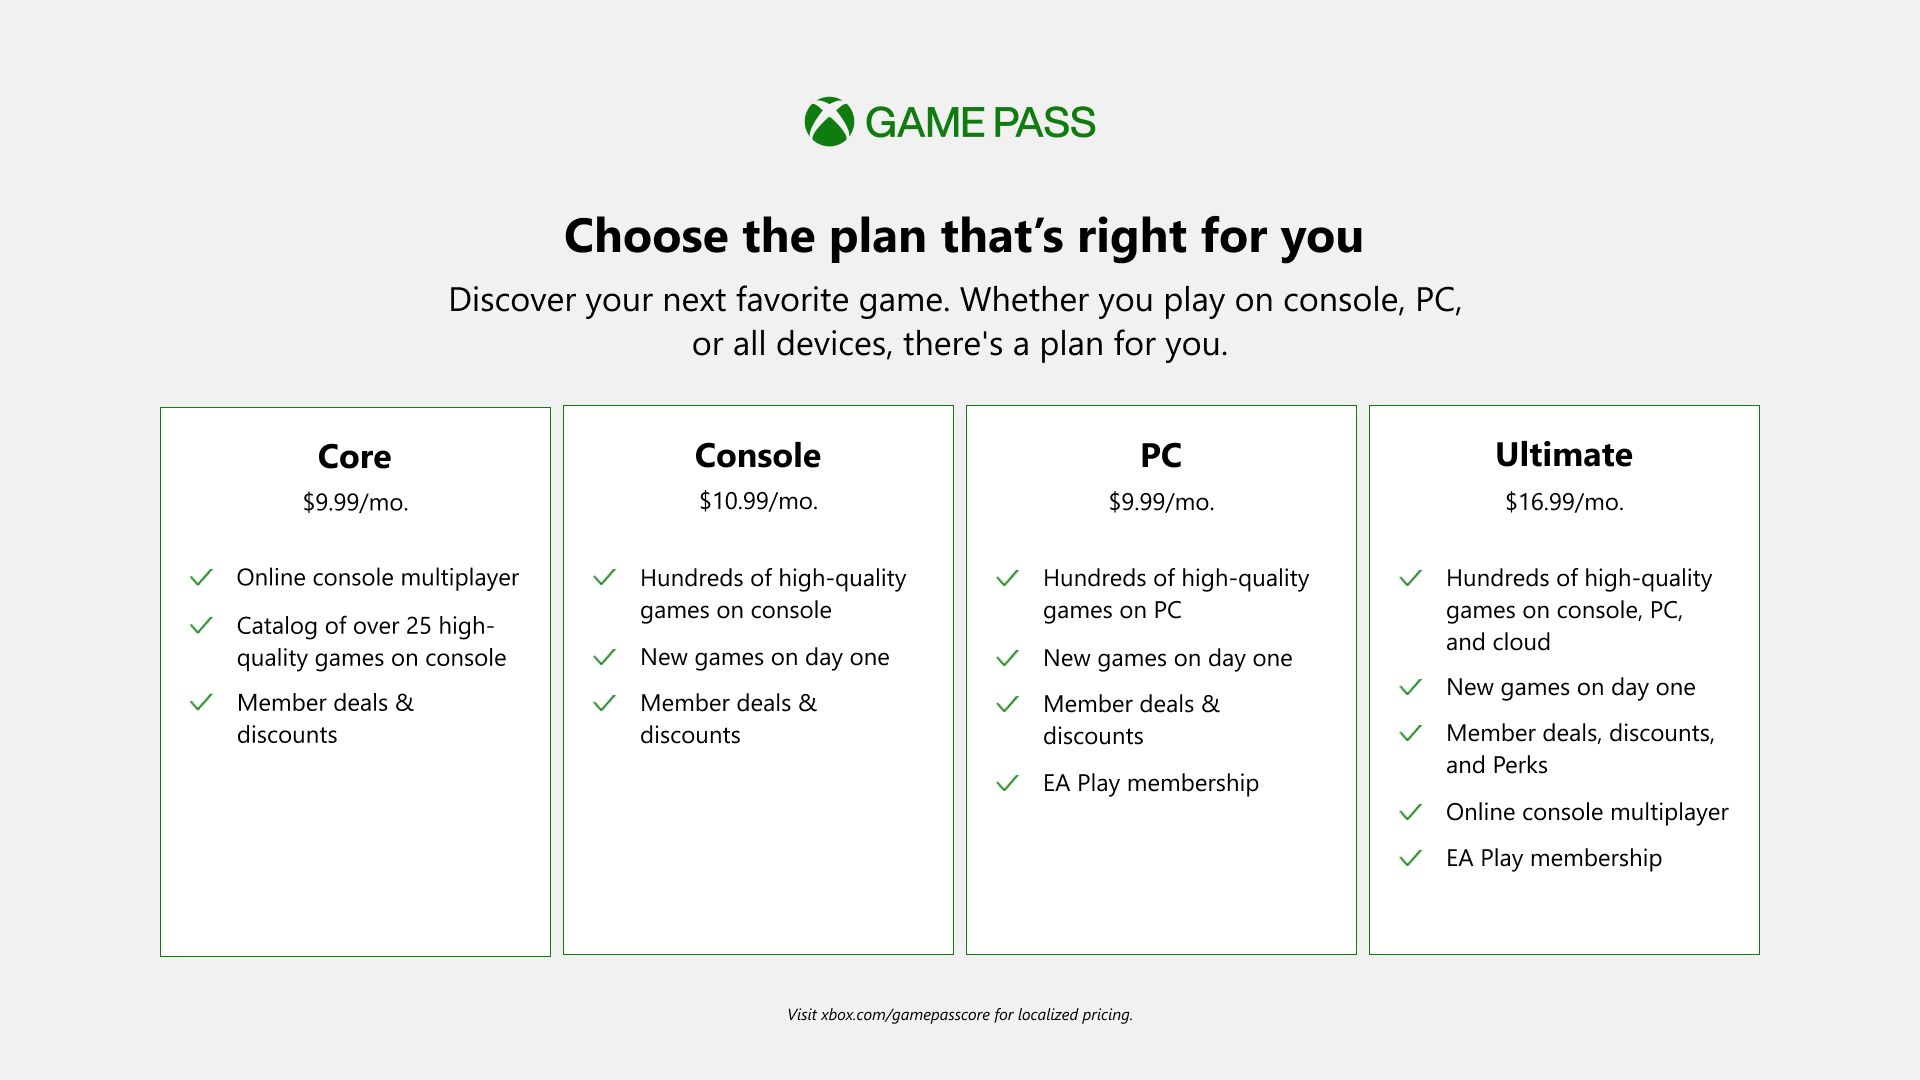 19 Jogos do Xbox Game Pass - Core